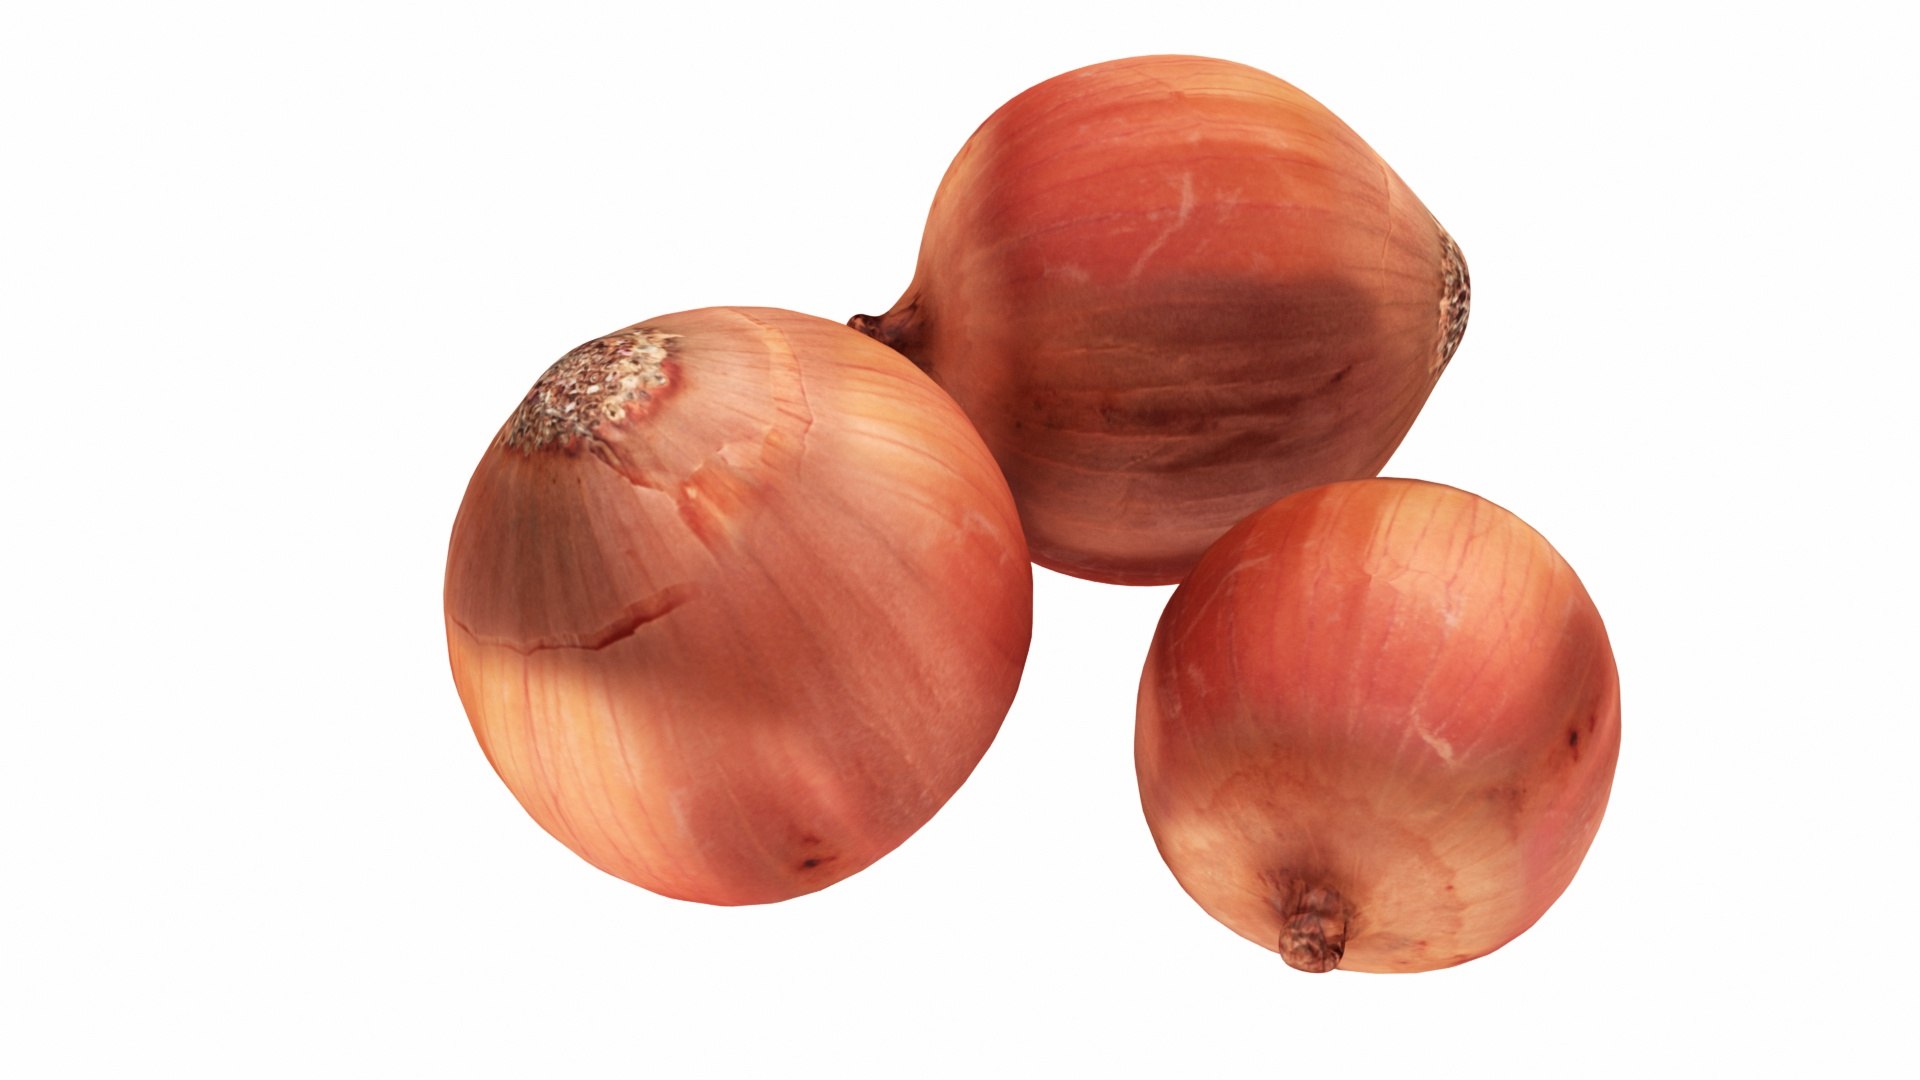 437 Potato Onion Storage Images, Stock Photos, 3D objects, & Vectors